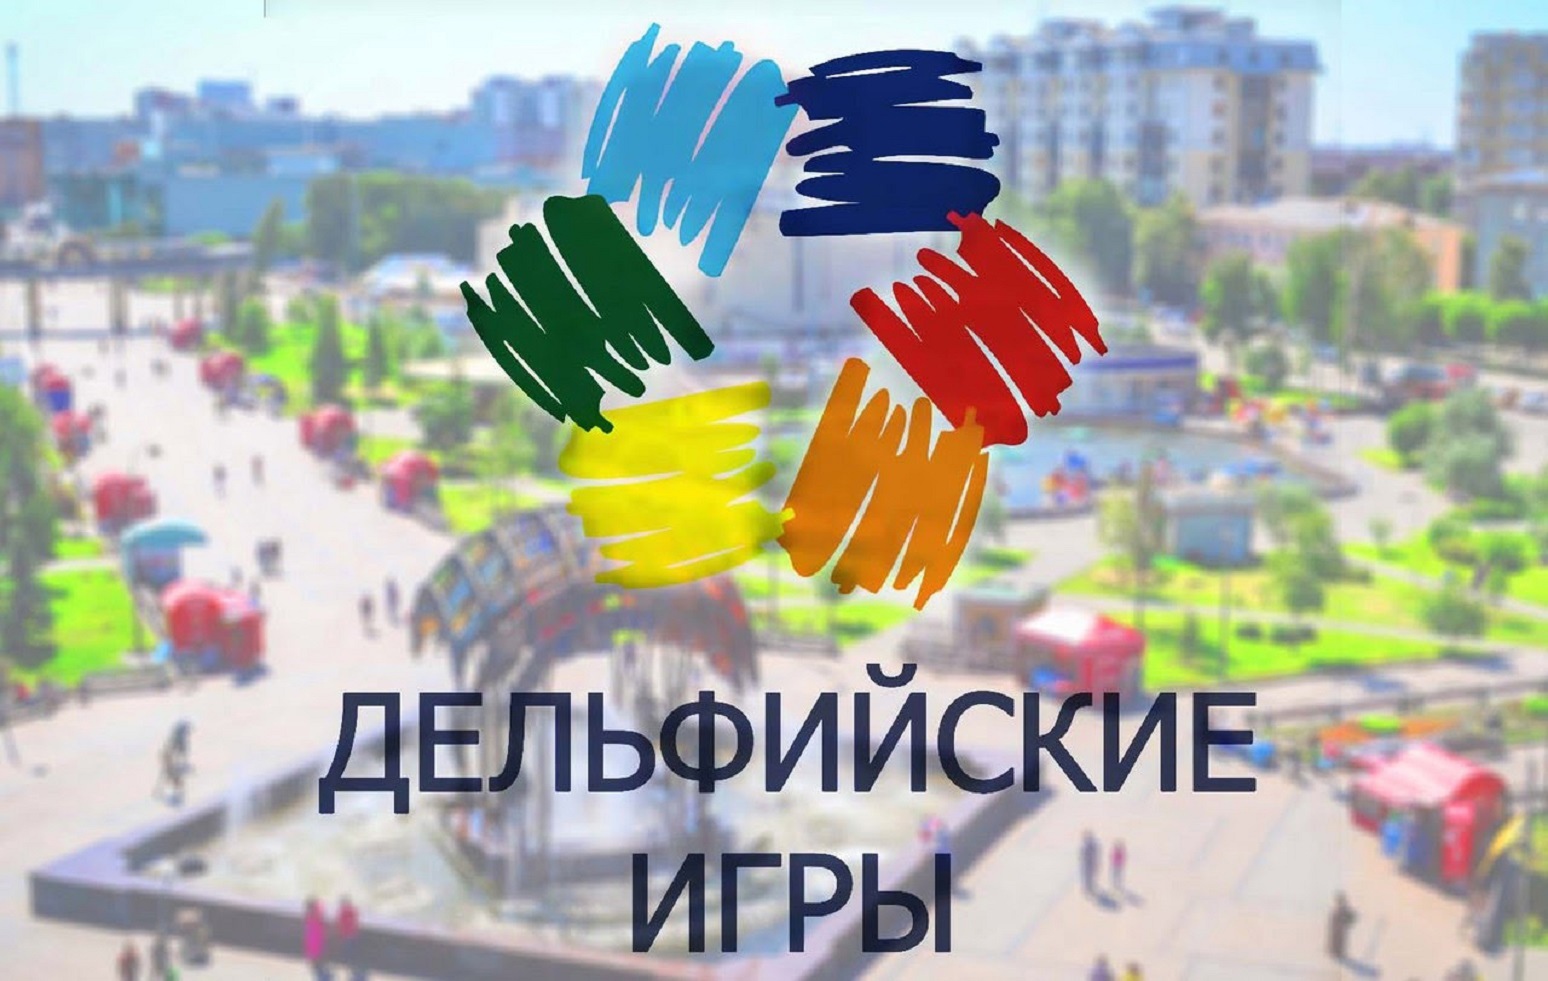 Как стало известно порталу «Весь Новгород», открыт прием заявок на отборочный тур XXI Молодежных Дельфийских игр России.